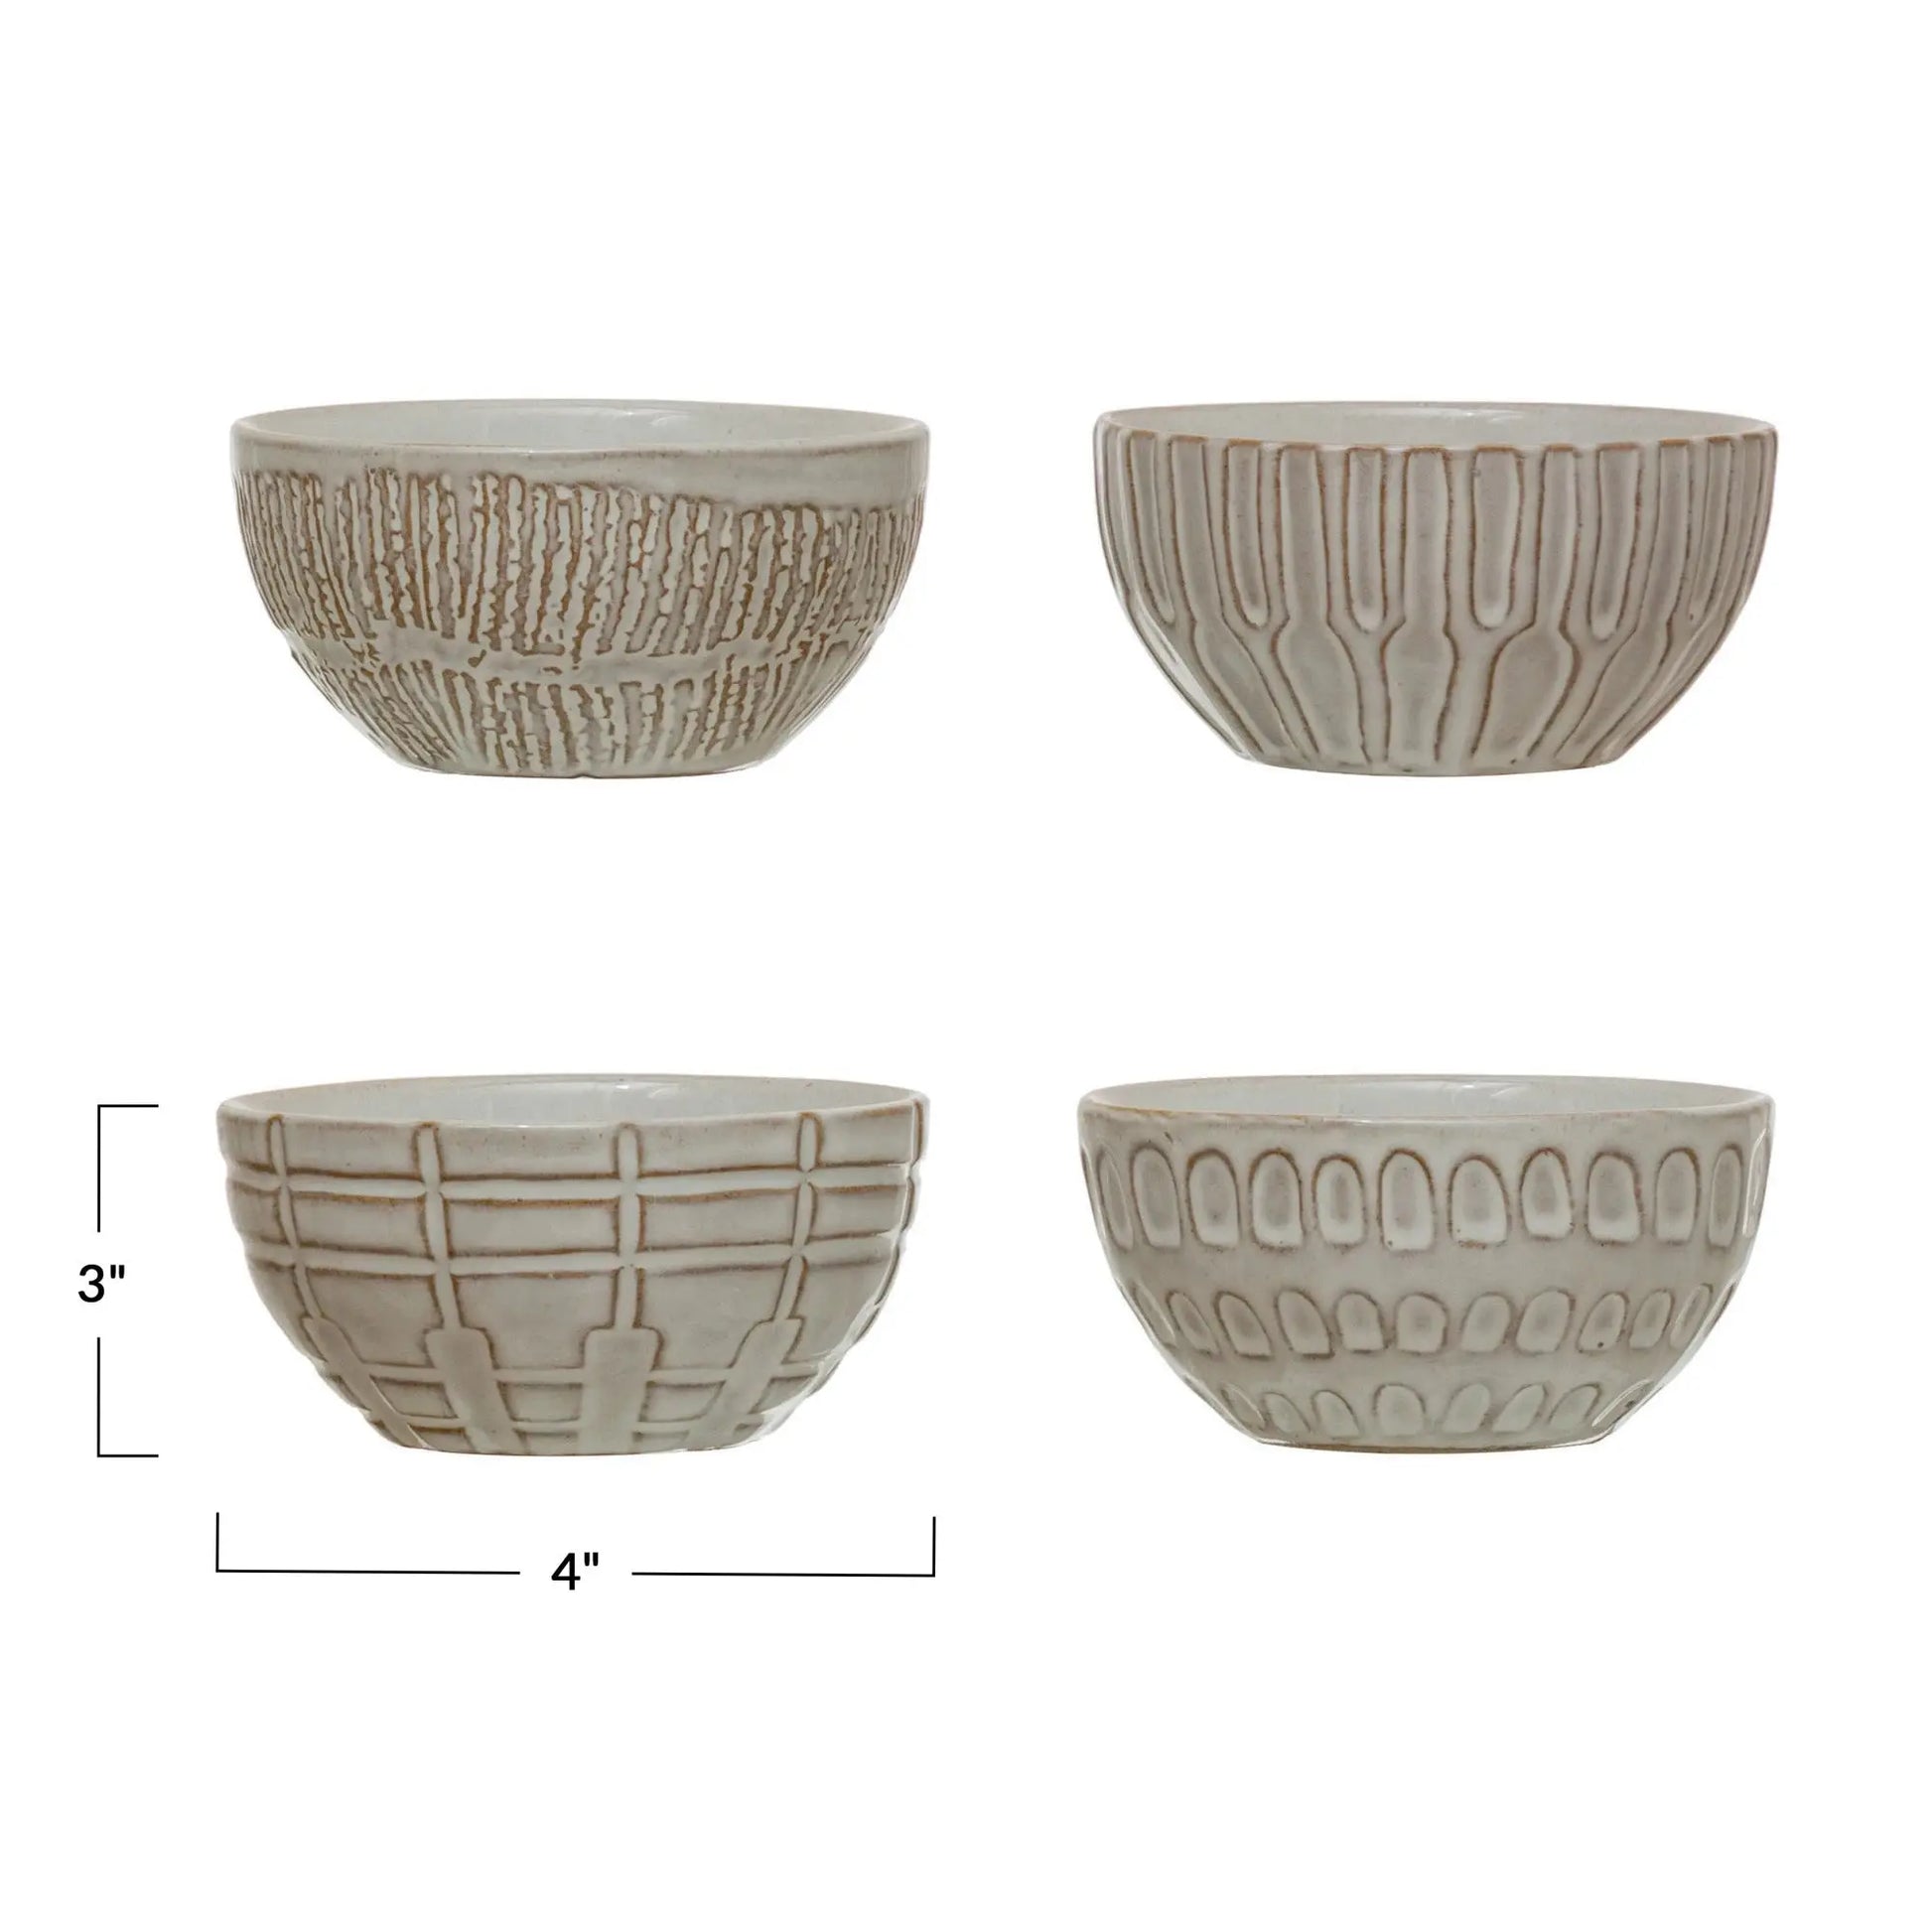 4" Debossed Stoneware Bowl, 4 Styles CREATIVE CO-OP